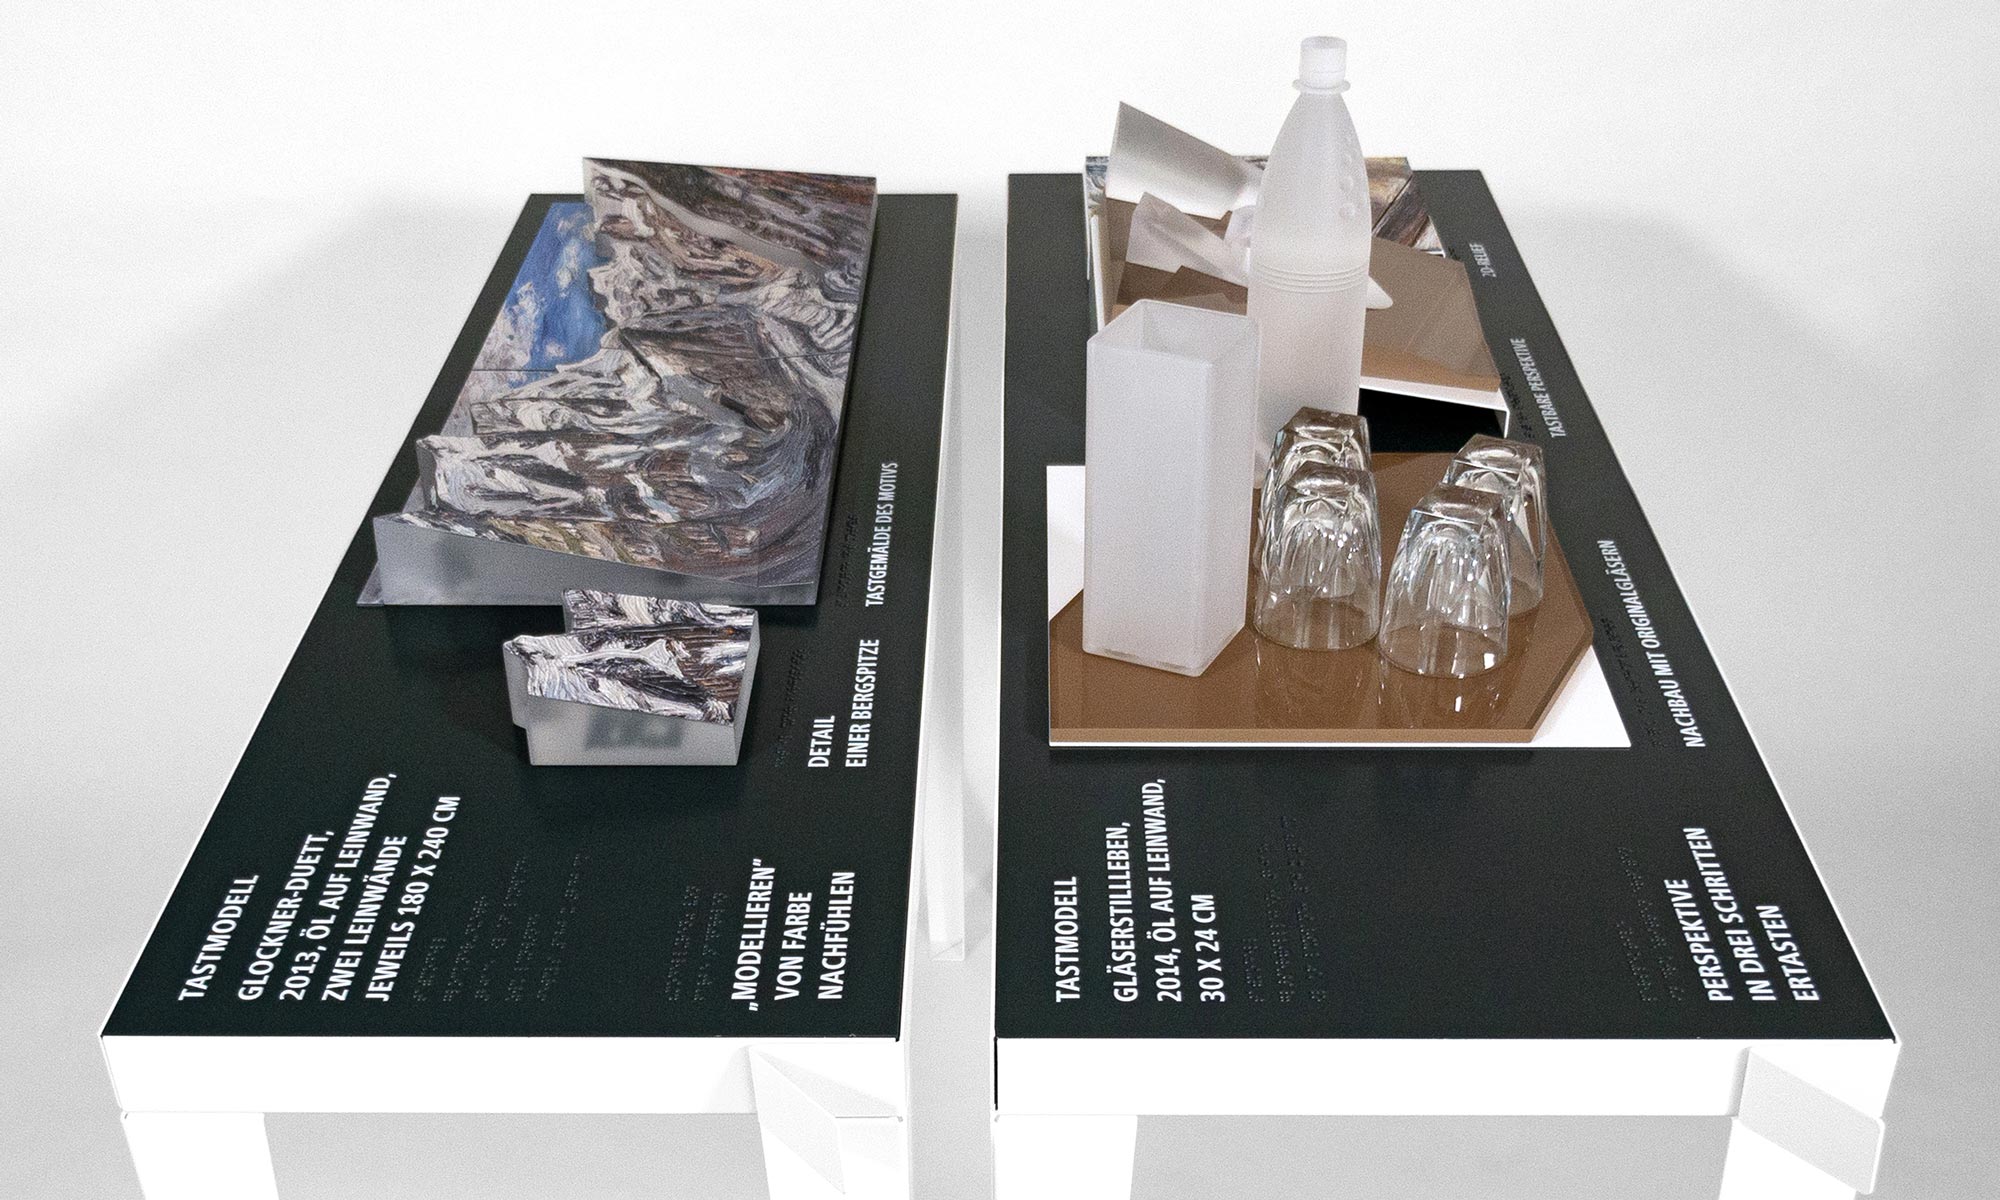 Es wird die Zusammenstellung der Tastmodellen „Gläserstilleben“ und „Bergwelten“ in unterschiedlichen Variationen von oben gezeigt.